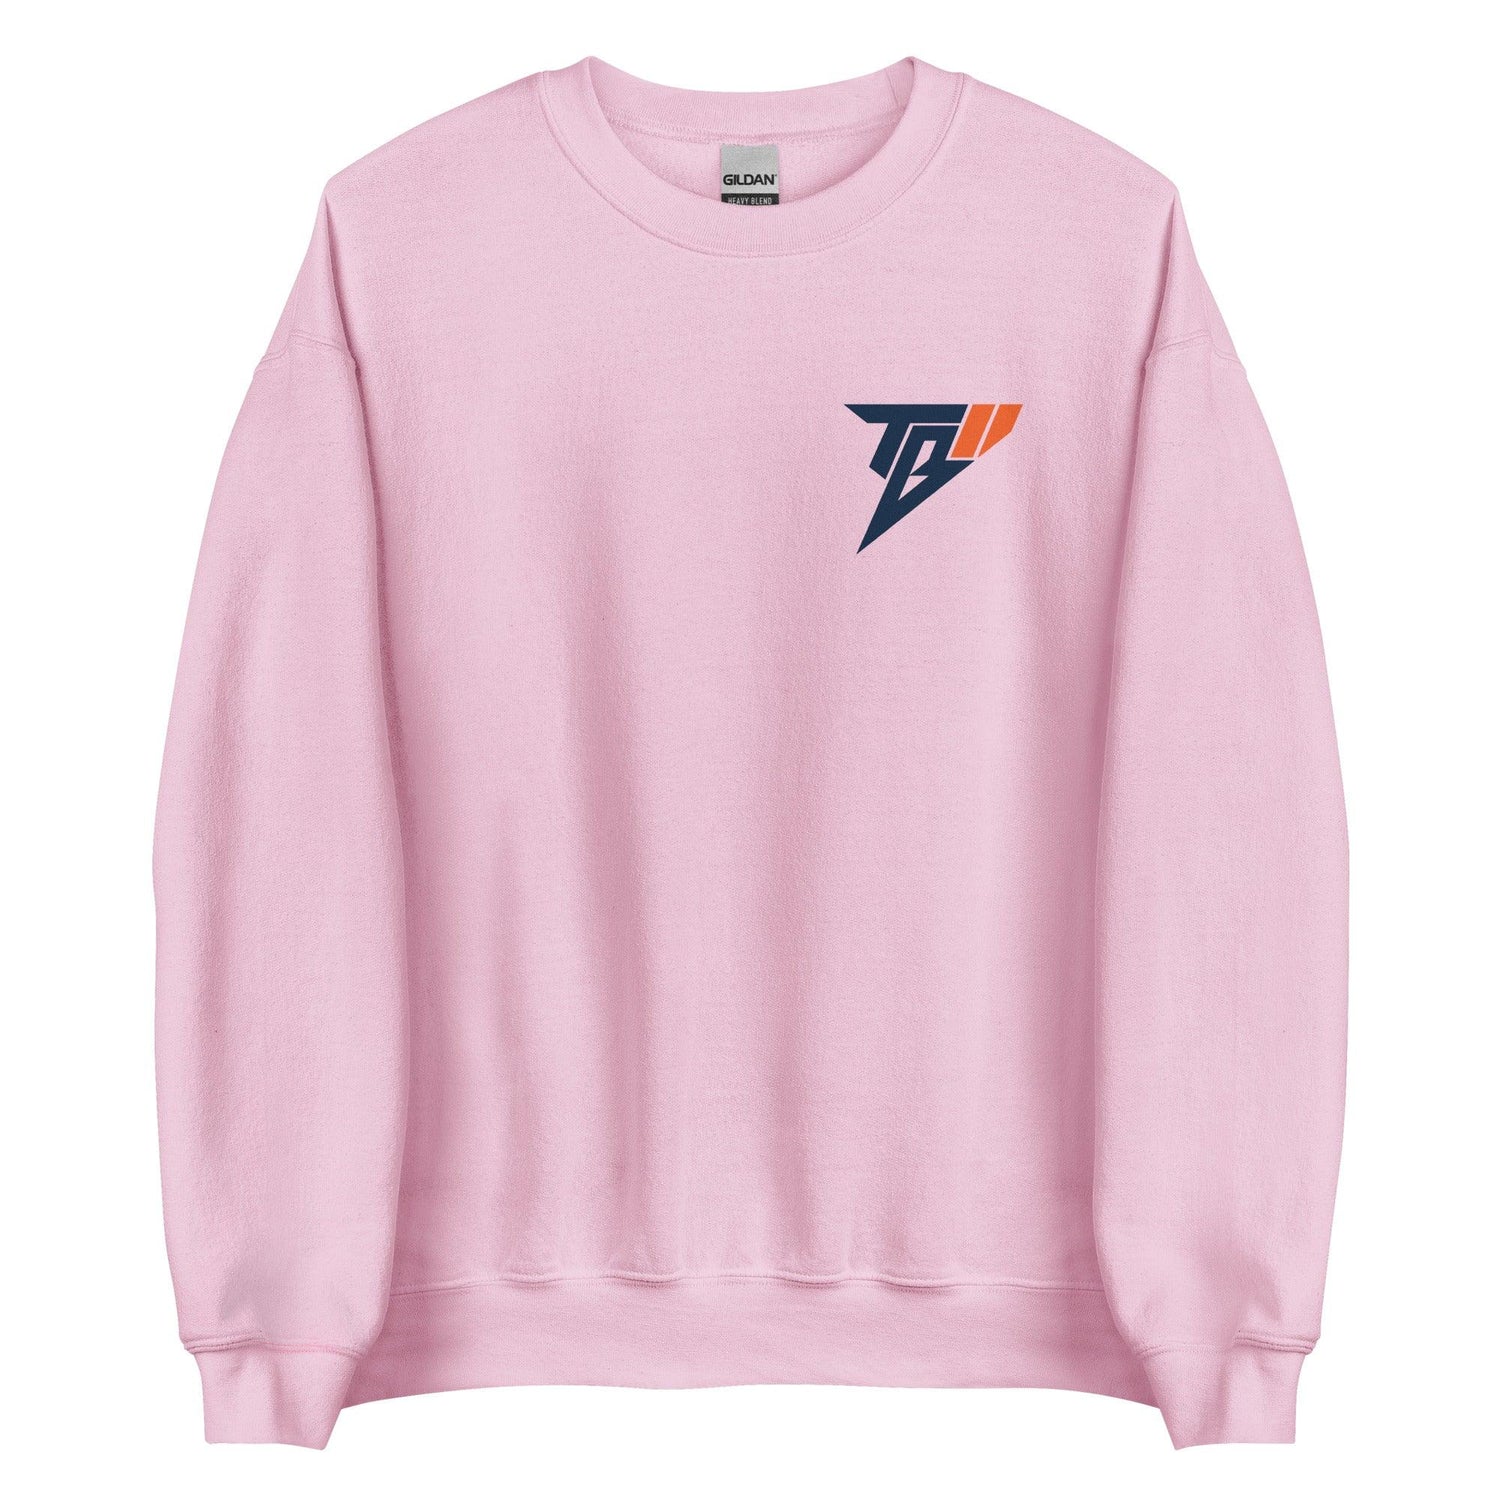 Trumane Bell II "TBII" Sweatshirt - Fan Arch